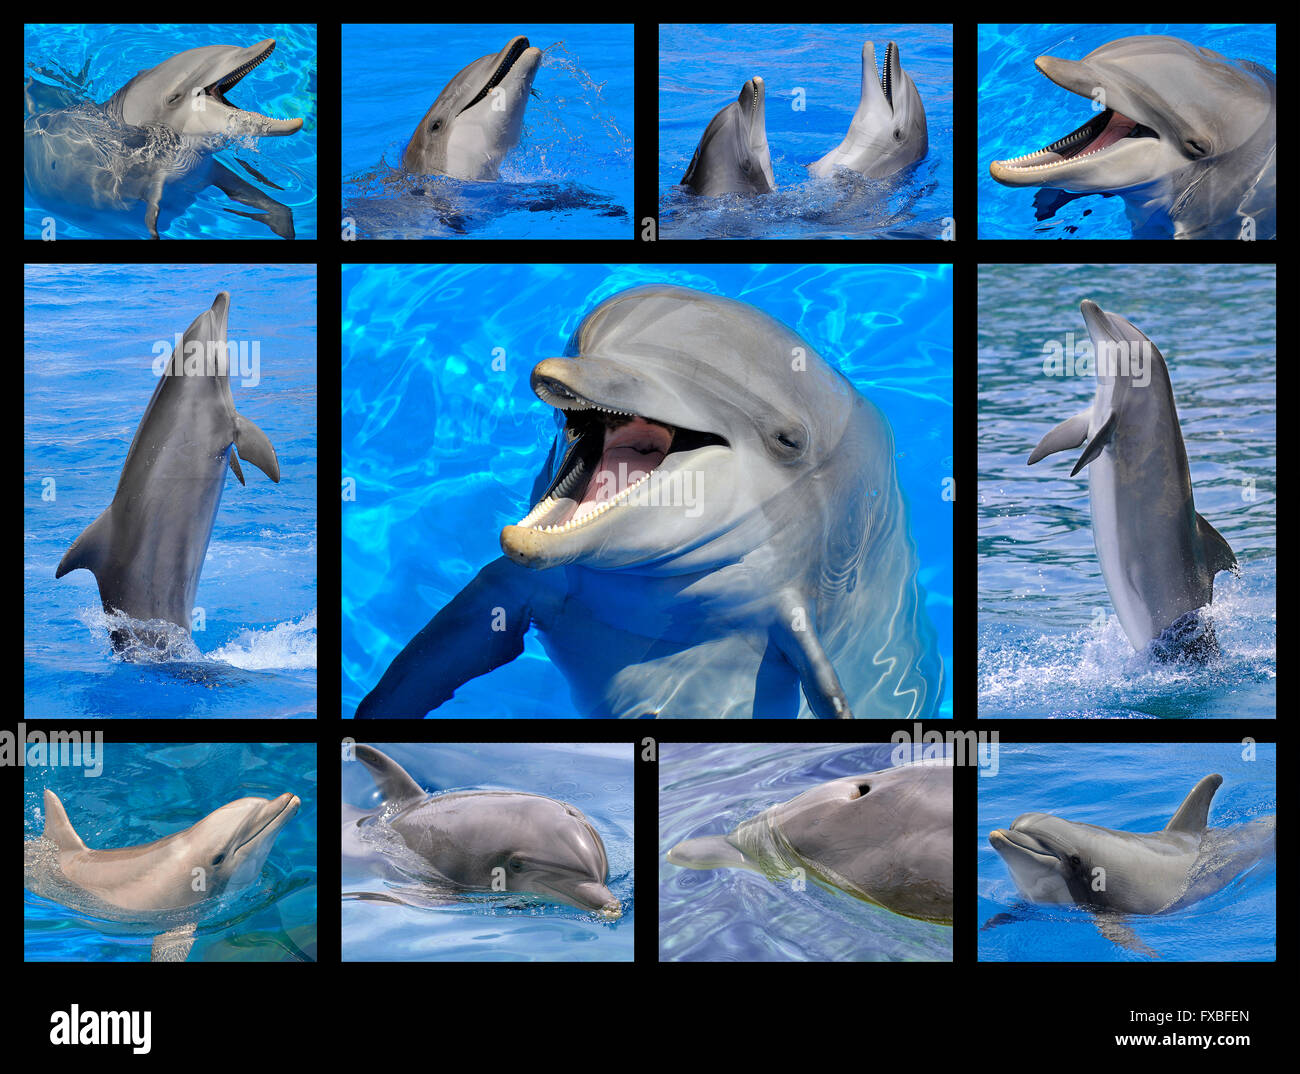 11 photos de la mosaïque de grands dauphins (Tursiops truncatus) dans l'eau bleue Banque D'Images